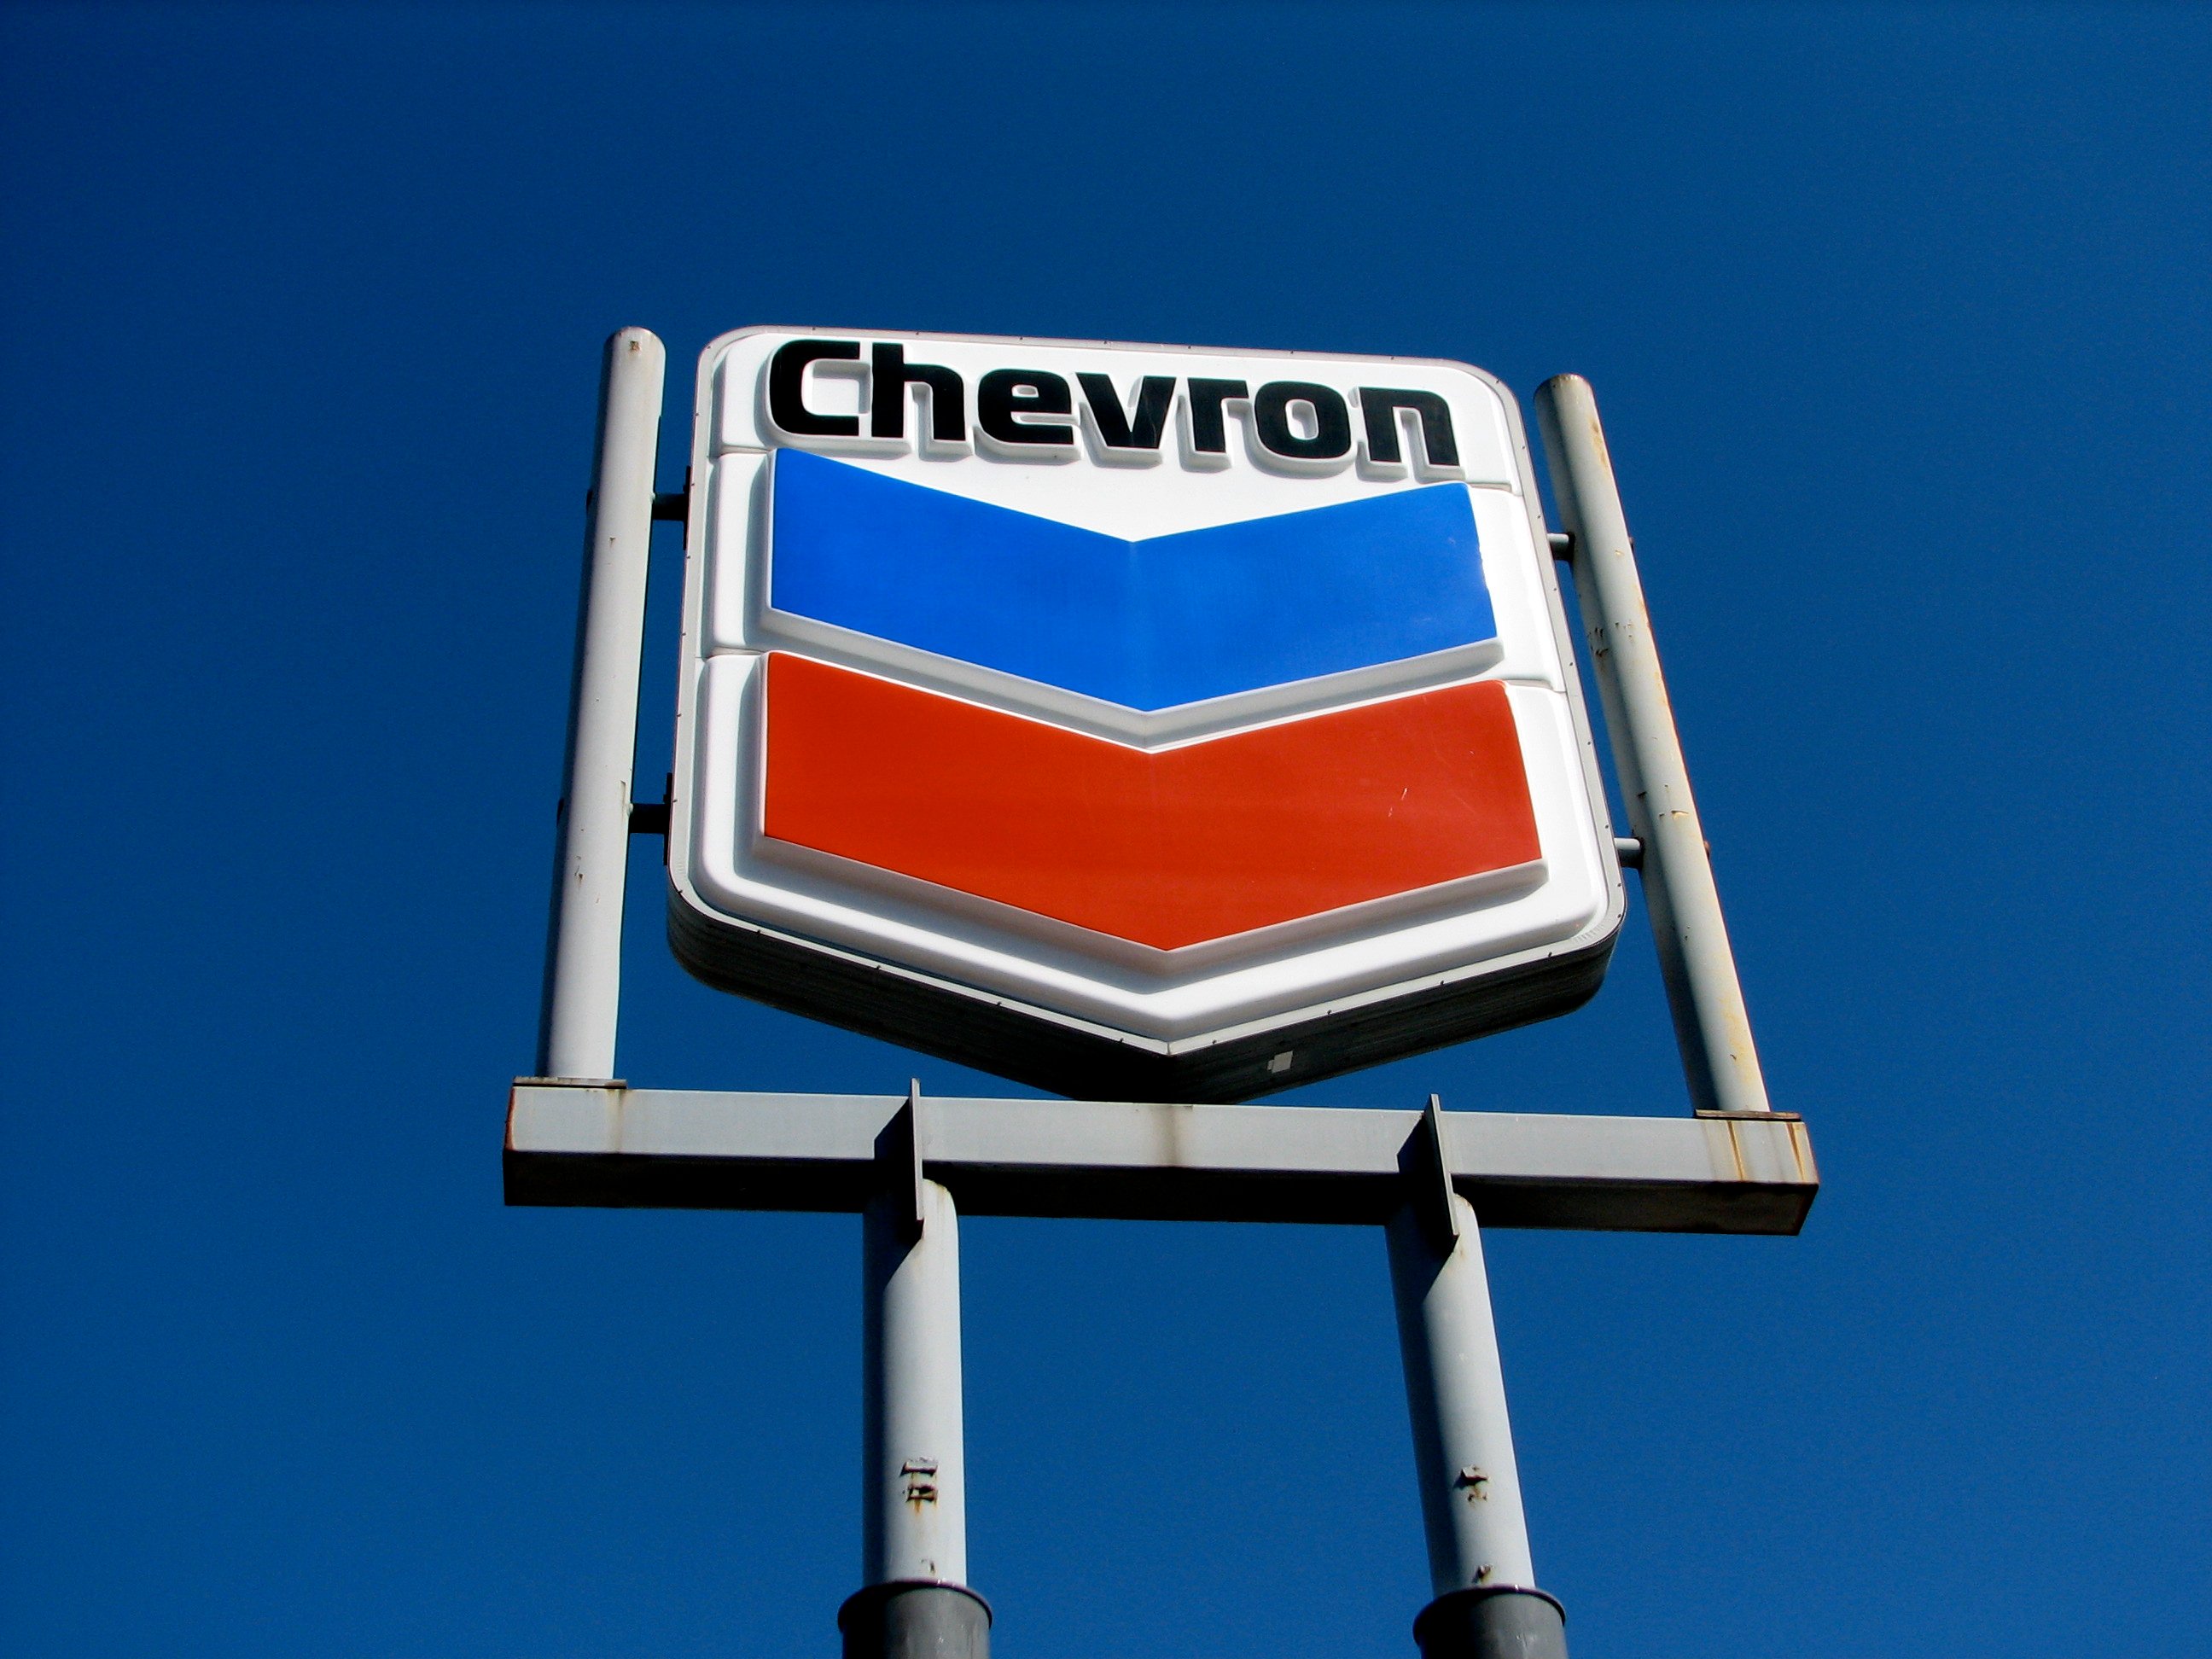 Where Chevron (CVX) Is Cutting 655 Jobs - Nasdaq.com